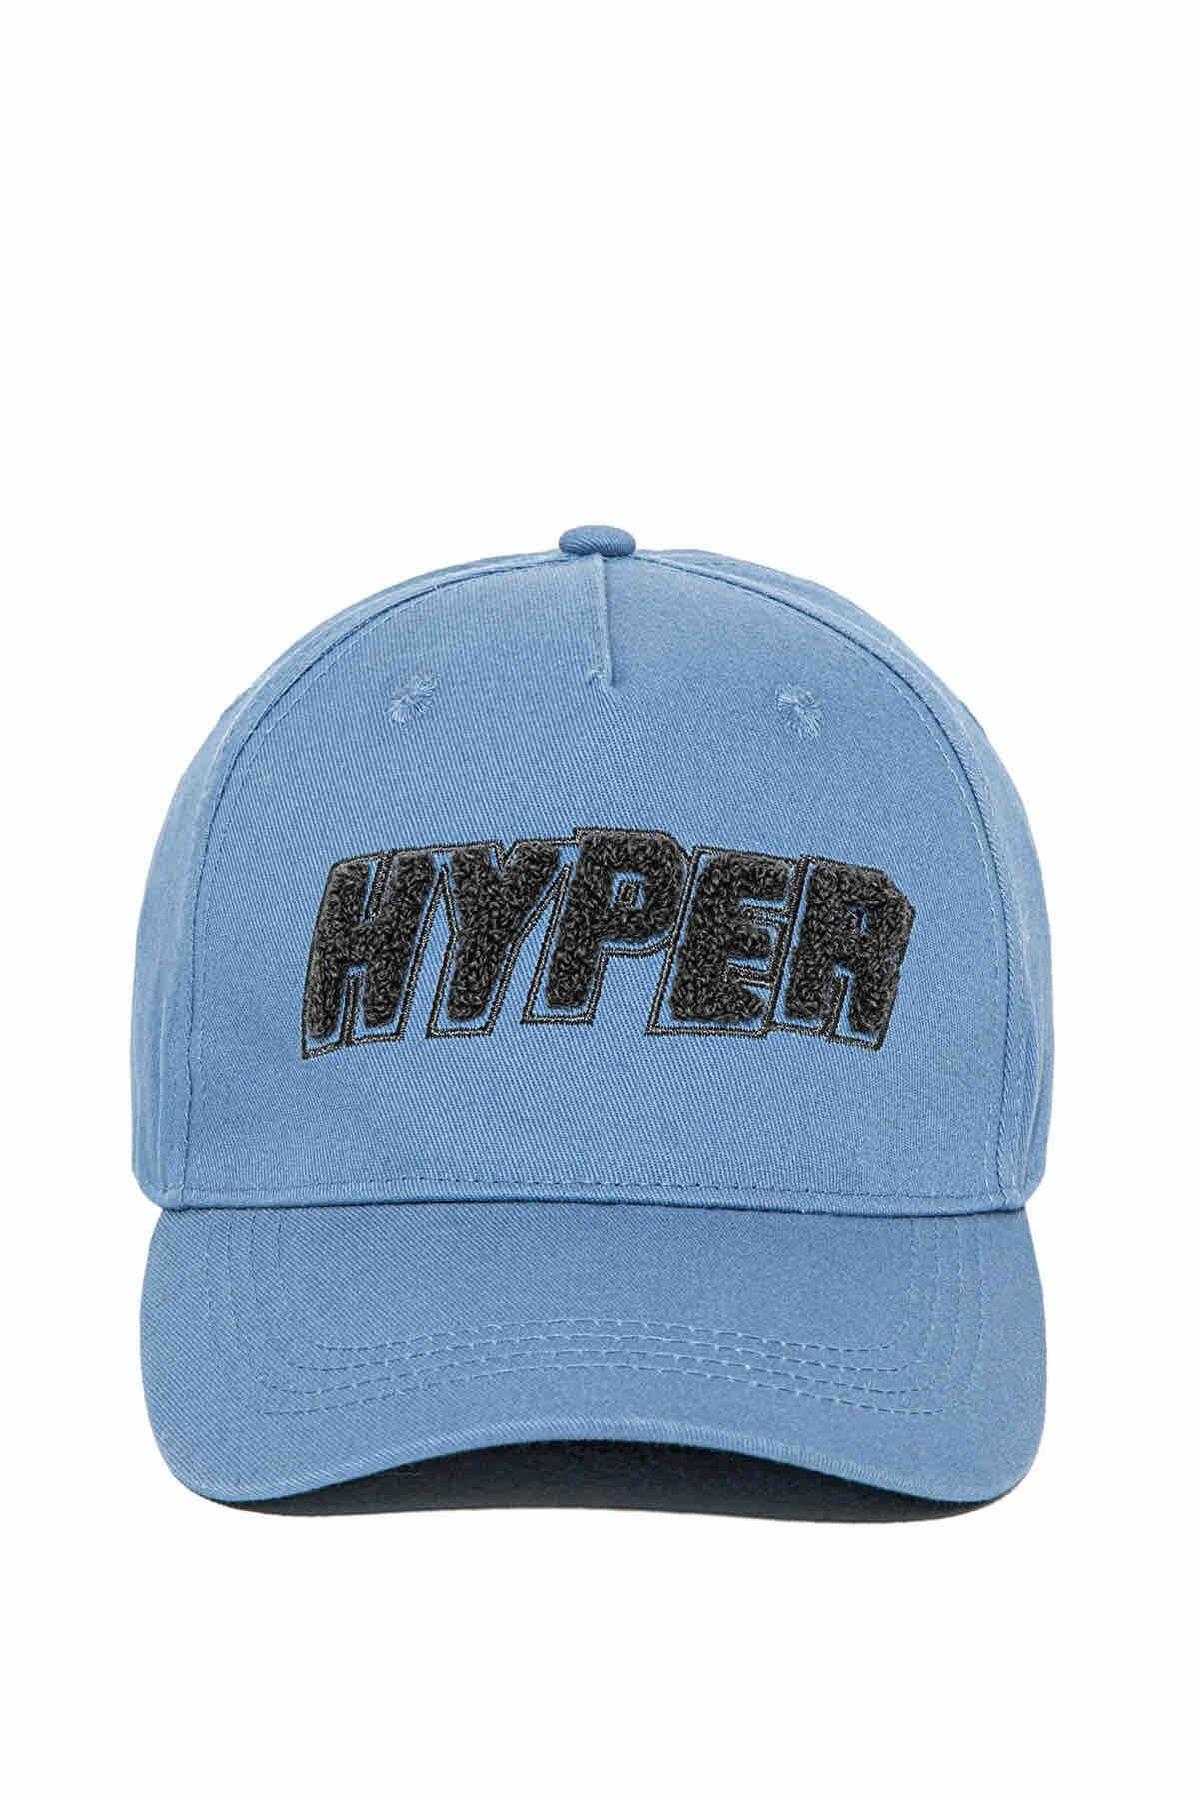 کلاه اسپرت یونیسکس ماوی طرح هایپر کد.1055